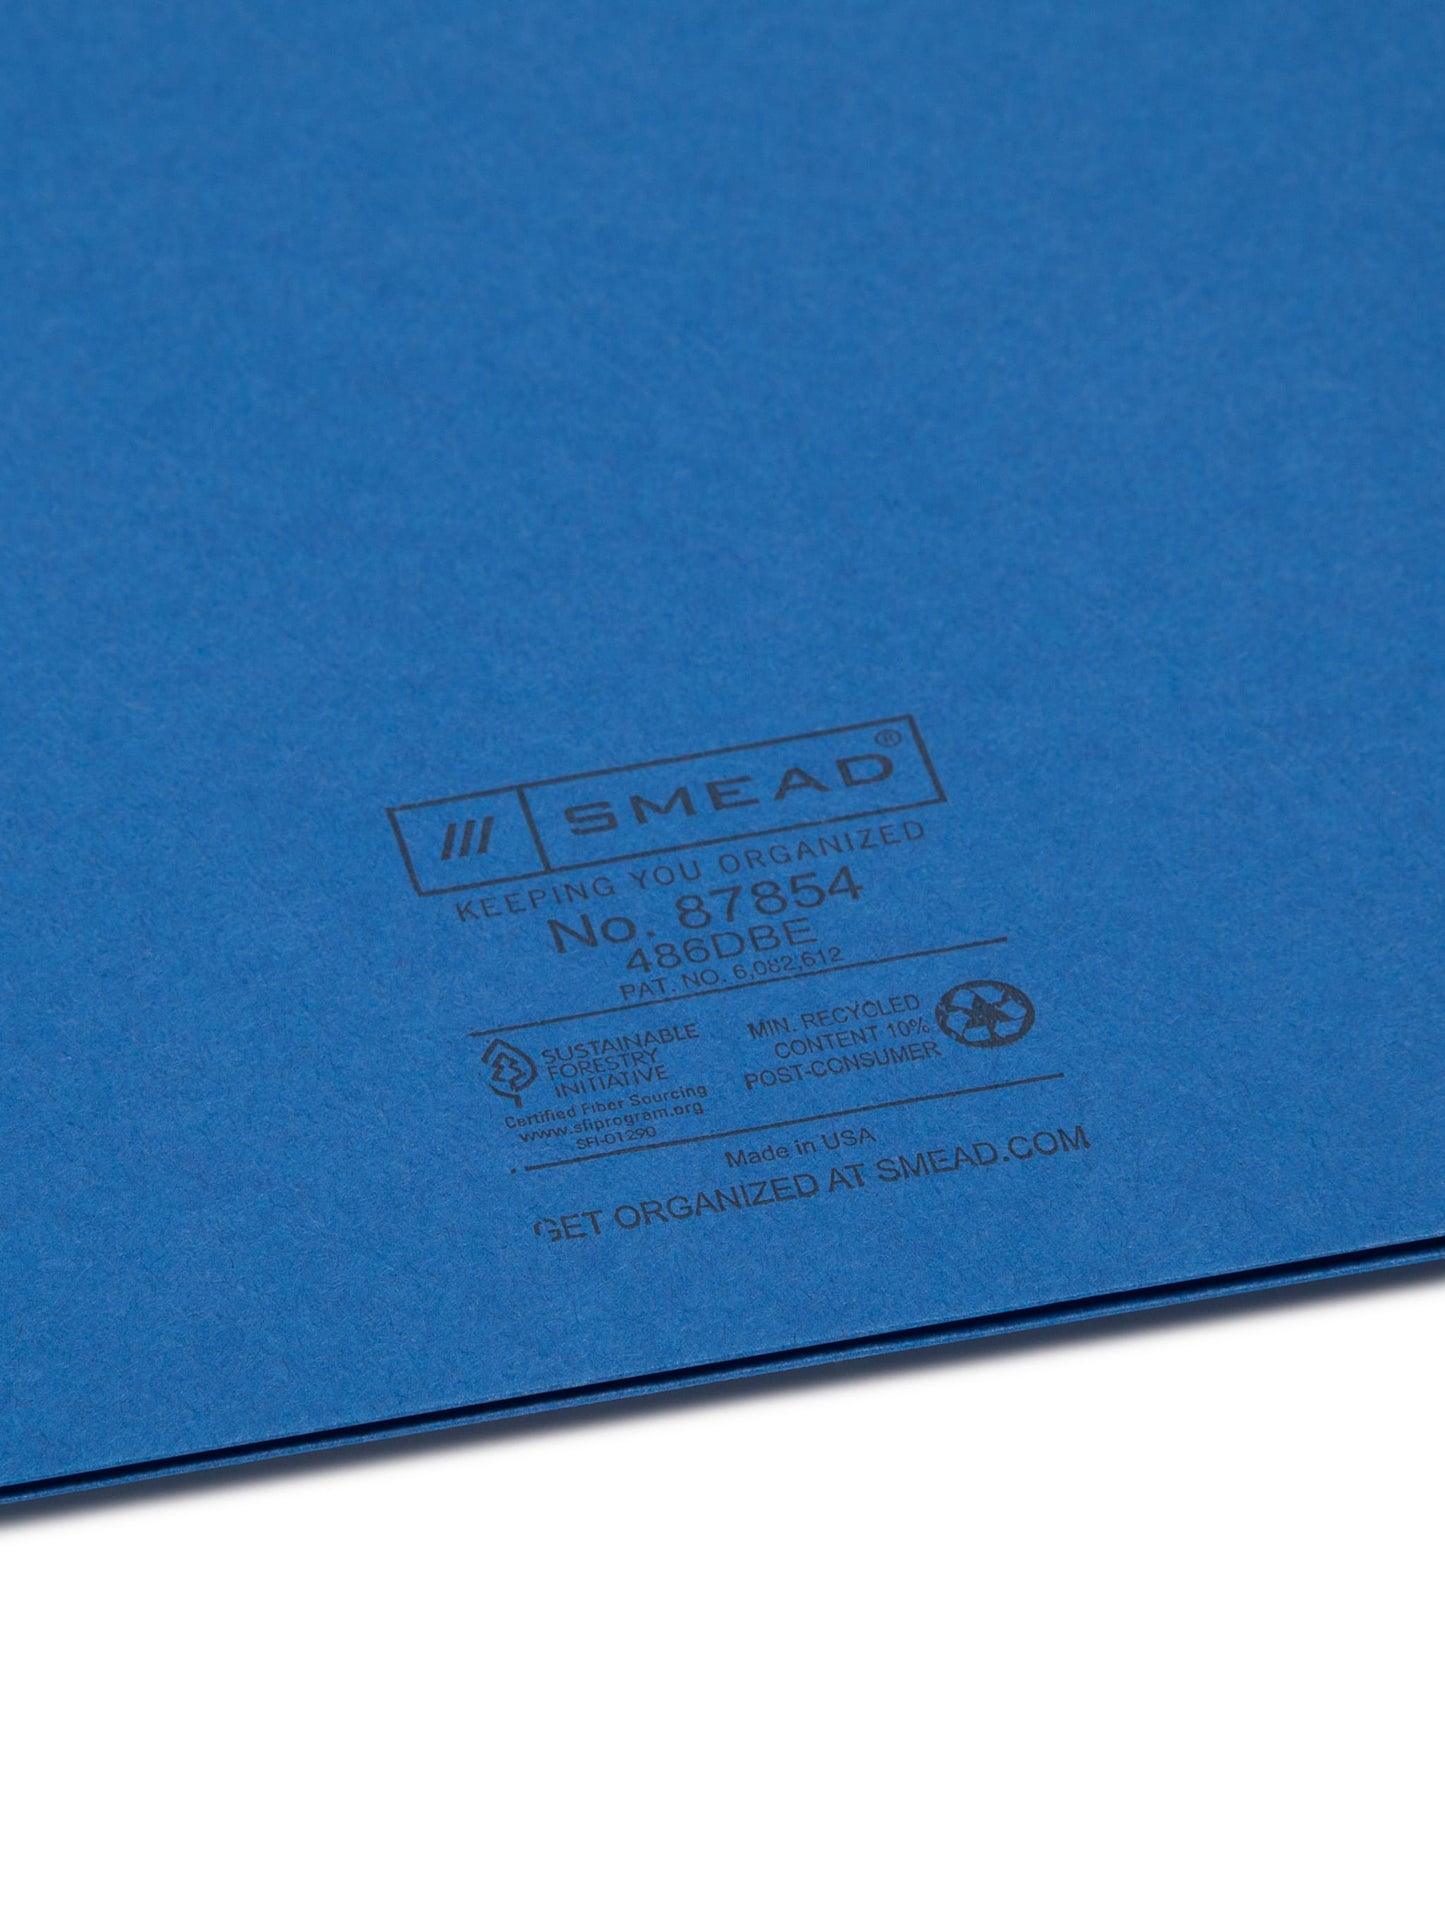 Standard Two-Pocket Folders, Dark Blue Color, Letter Size, Set of 0, 30086486878549